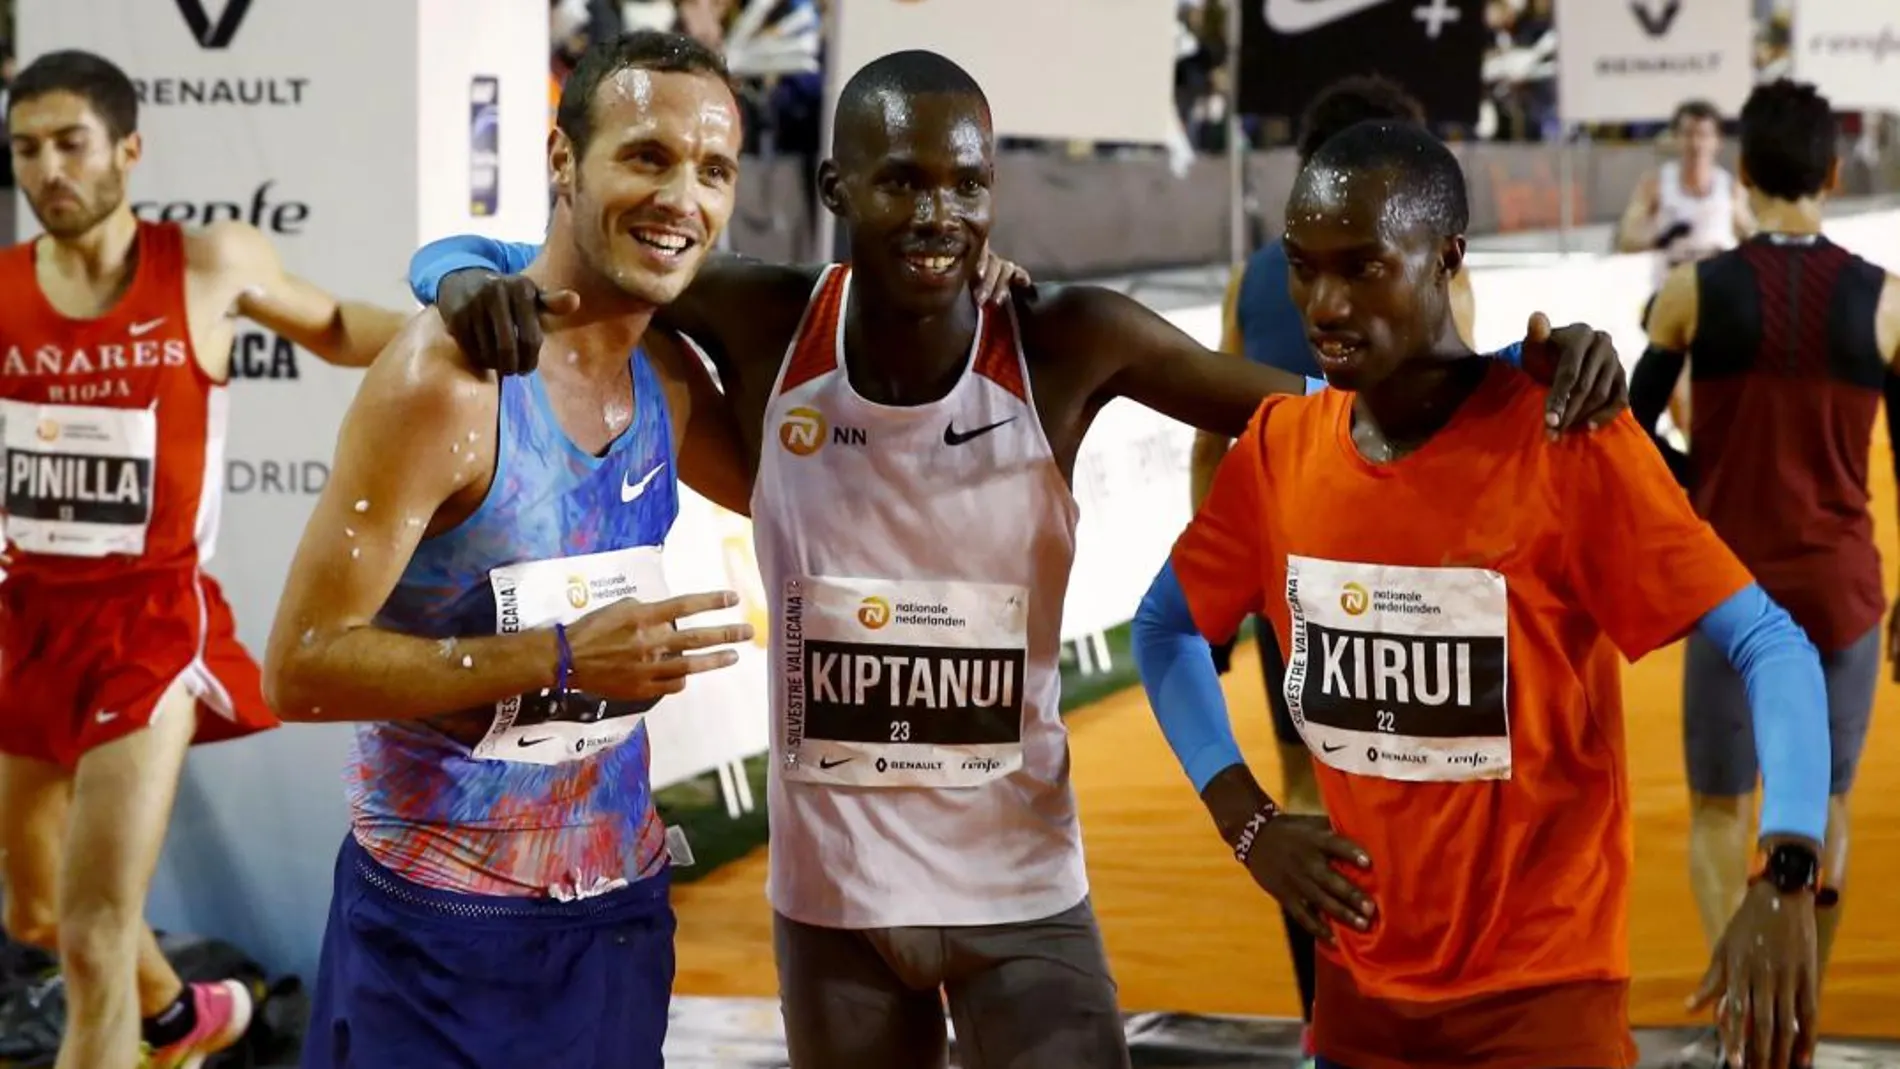 El keniano Eric Kiptanui (c),posa junto a su compatriota Amos Kirui (d) y al español Toni Abadía (i) tras lograr la primera, segunda y tercera posición.